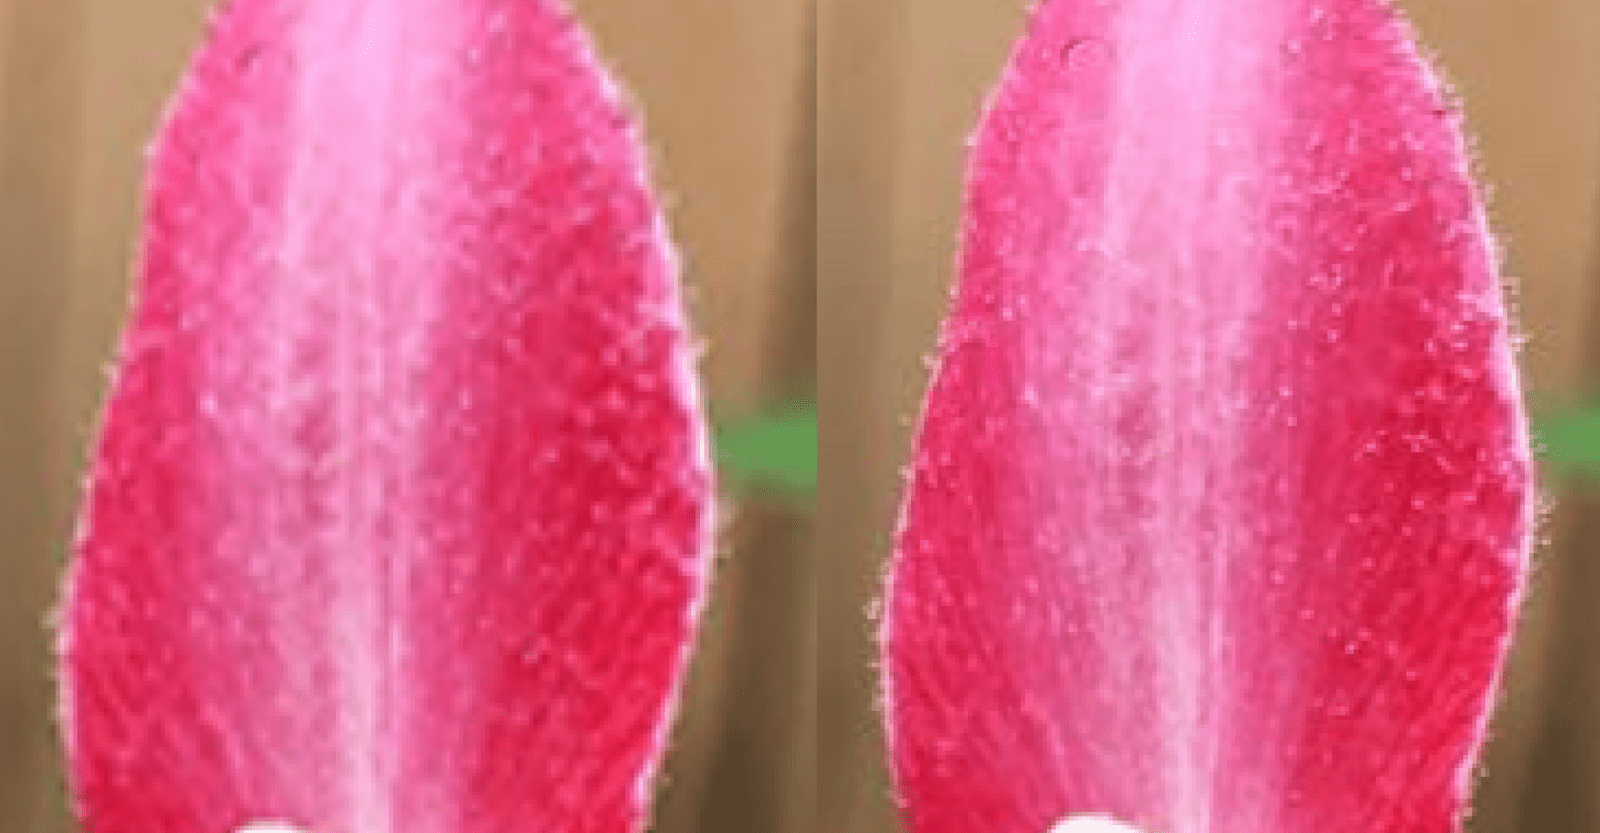 لقطة مقرّبة لبتلة زهرة تُظهر تفاوتًا في الكثافة.